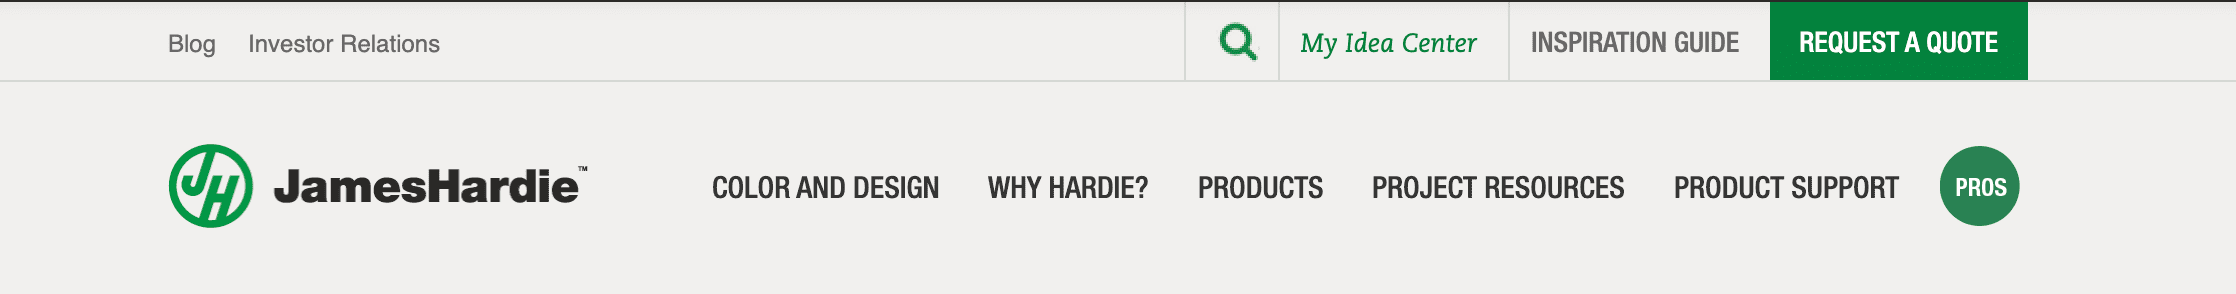 James Hardie Website Menu